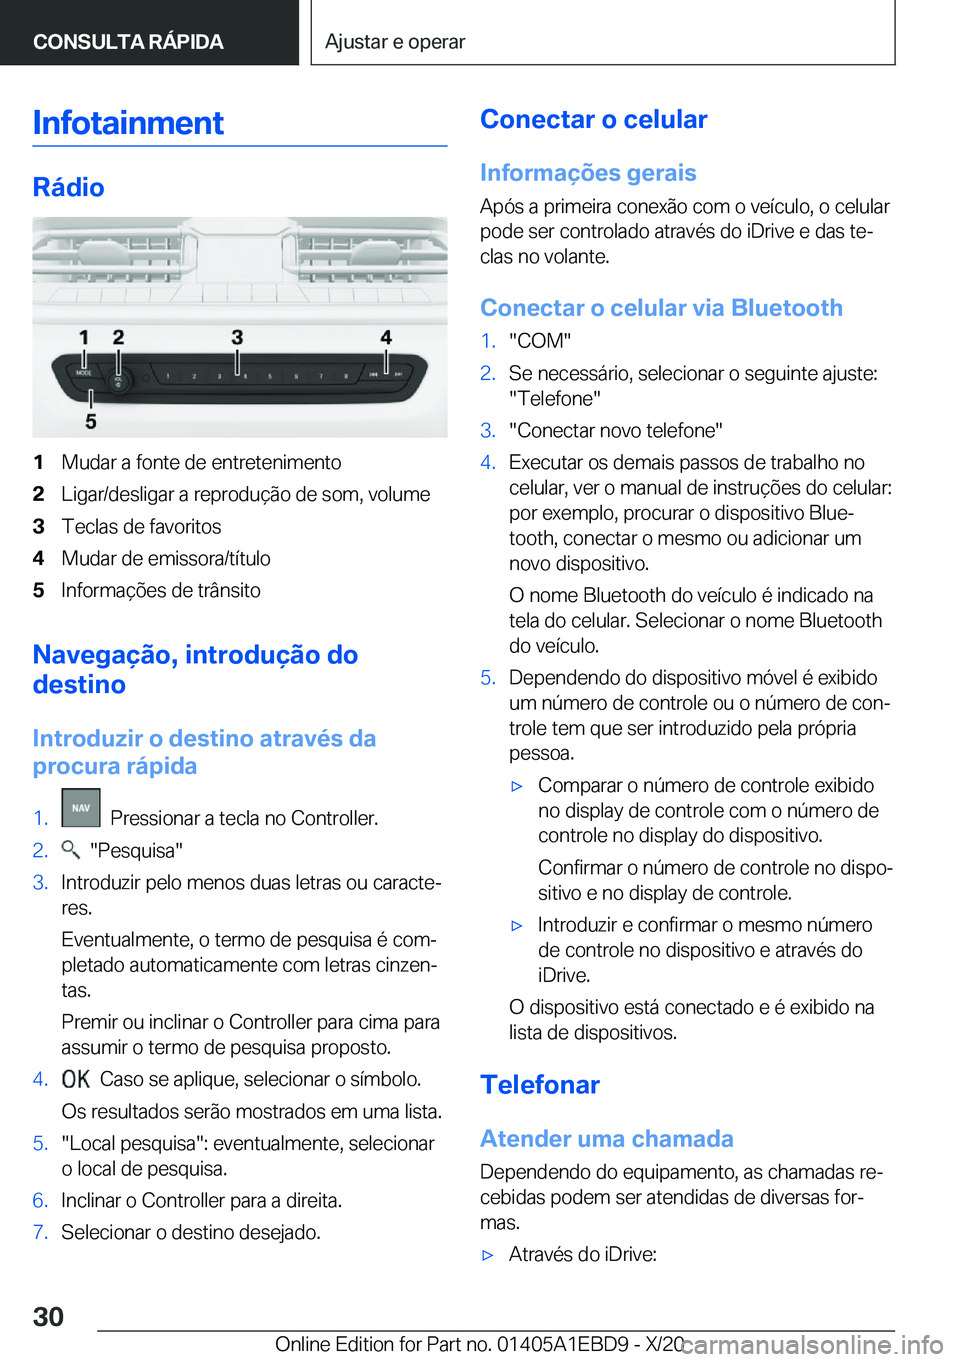 BMW 3 SERIES 2021  Manual do condutor (in Portuguese) �I�n�f�o�t�a�i�n�m�e�n�t
�R�á�d�i�o
�1�M�u�d�a�r��a��f�o�n�t�e��d�e��e�n�t�r�e�t�e�n�i�m�e�n�t�o�2�L�i�g�a�r�/�d�e�s�l�i�g�a�r��a��r�e�p�r�o�d�u�